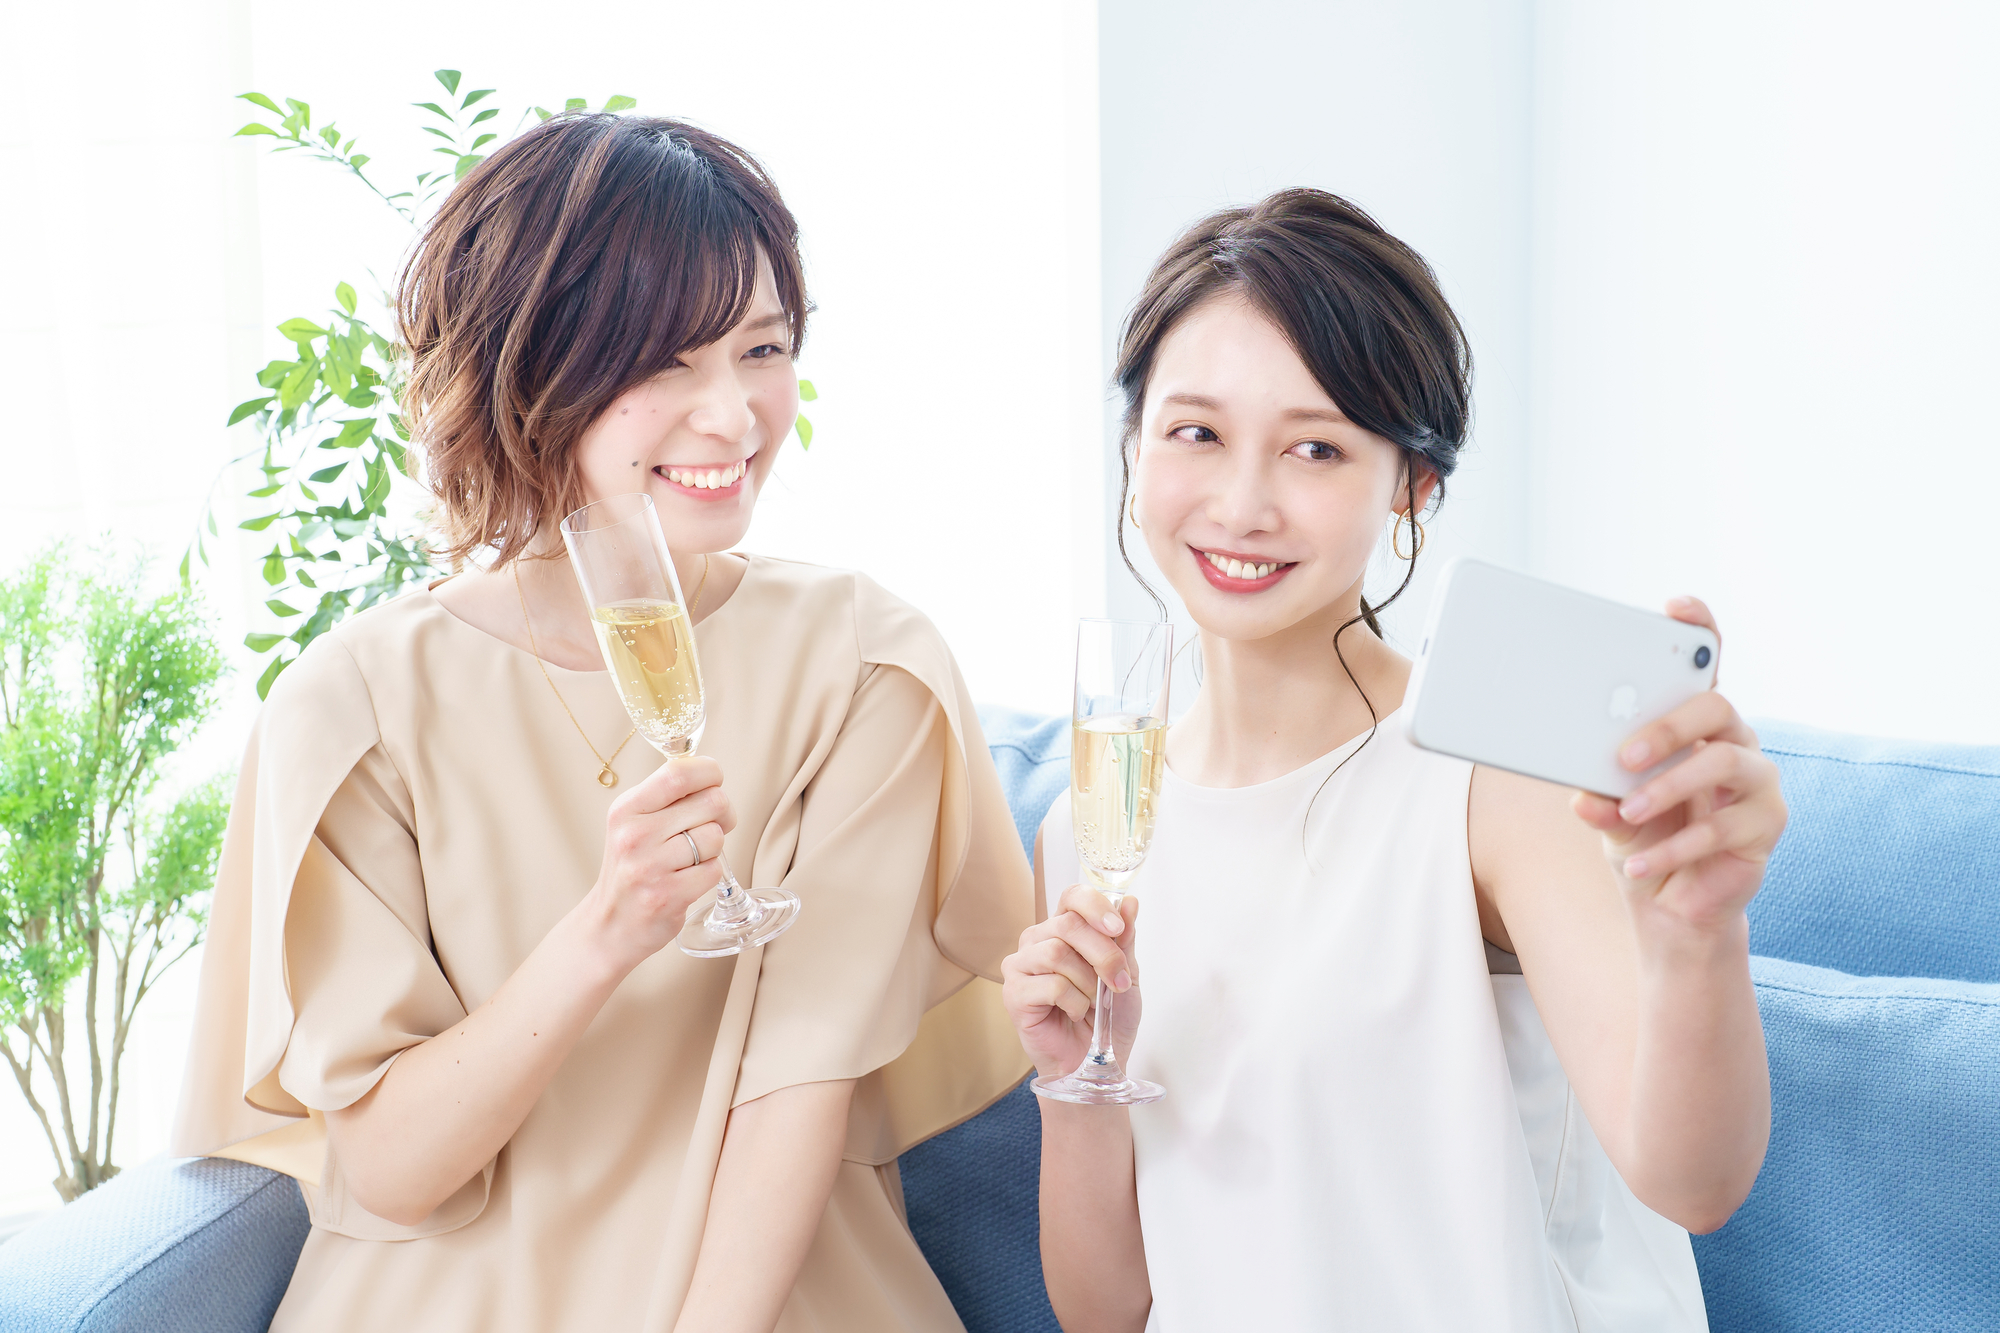 シャンパングラスを手に撮影する女性2人